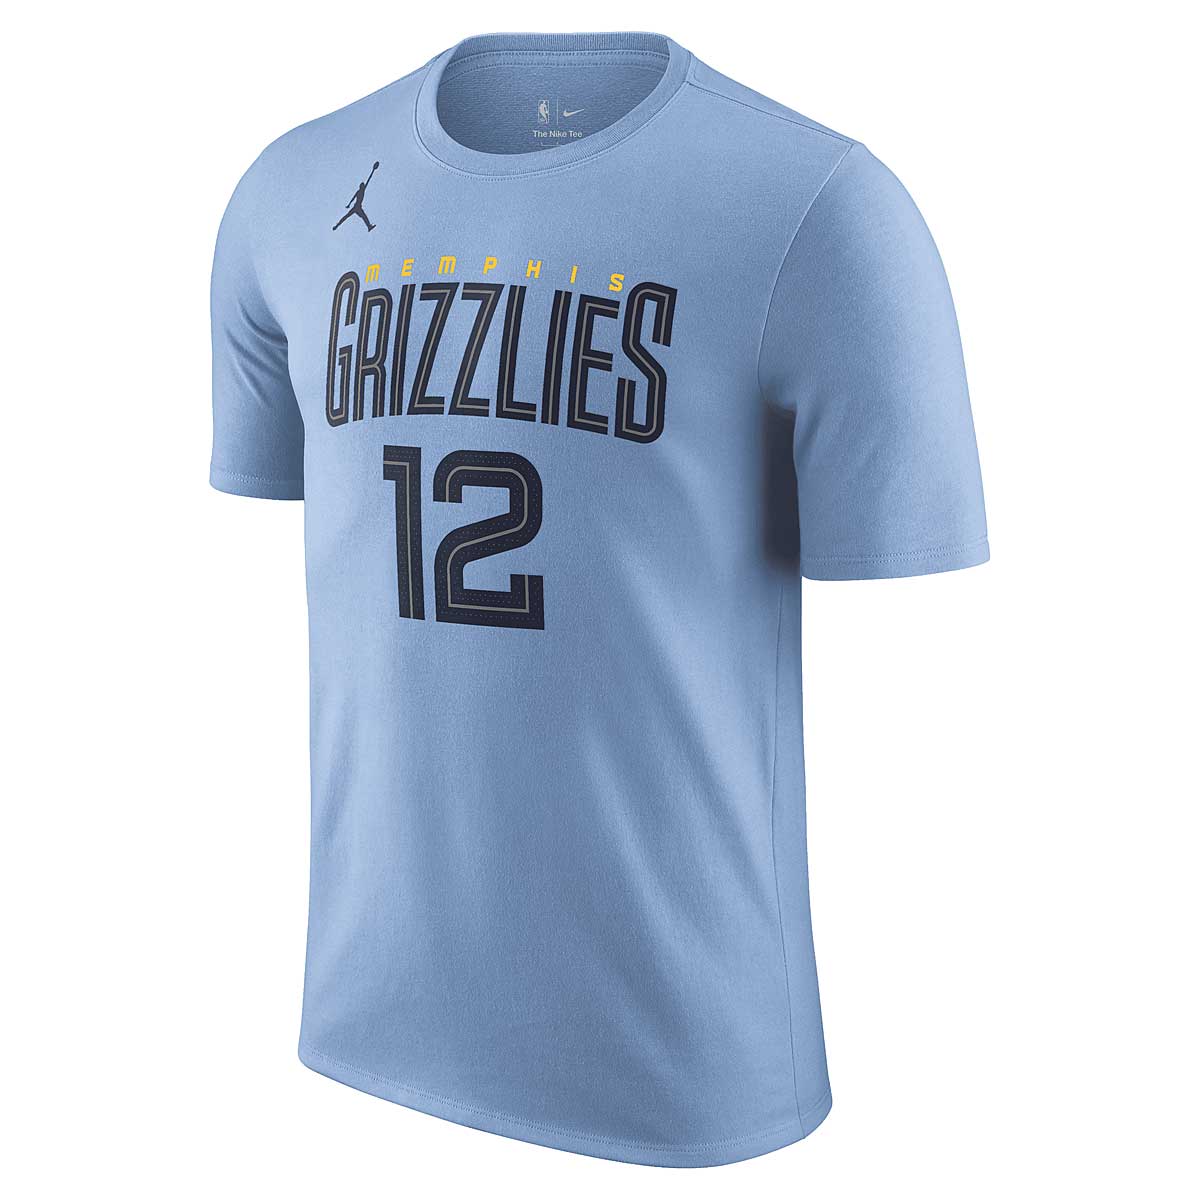 Nike NBA Memphis Grizzlies Statement N&n T-shirt Ja Morant, Light Blau/morant Ja XL